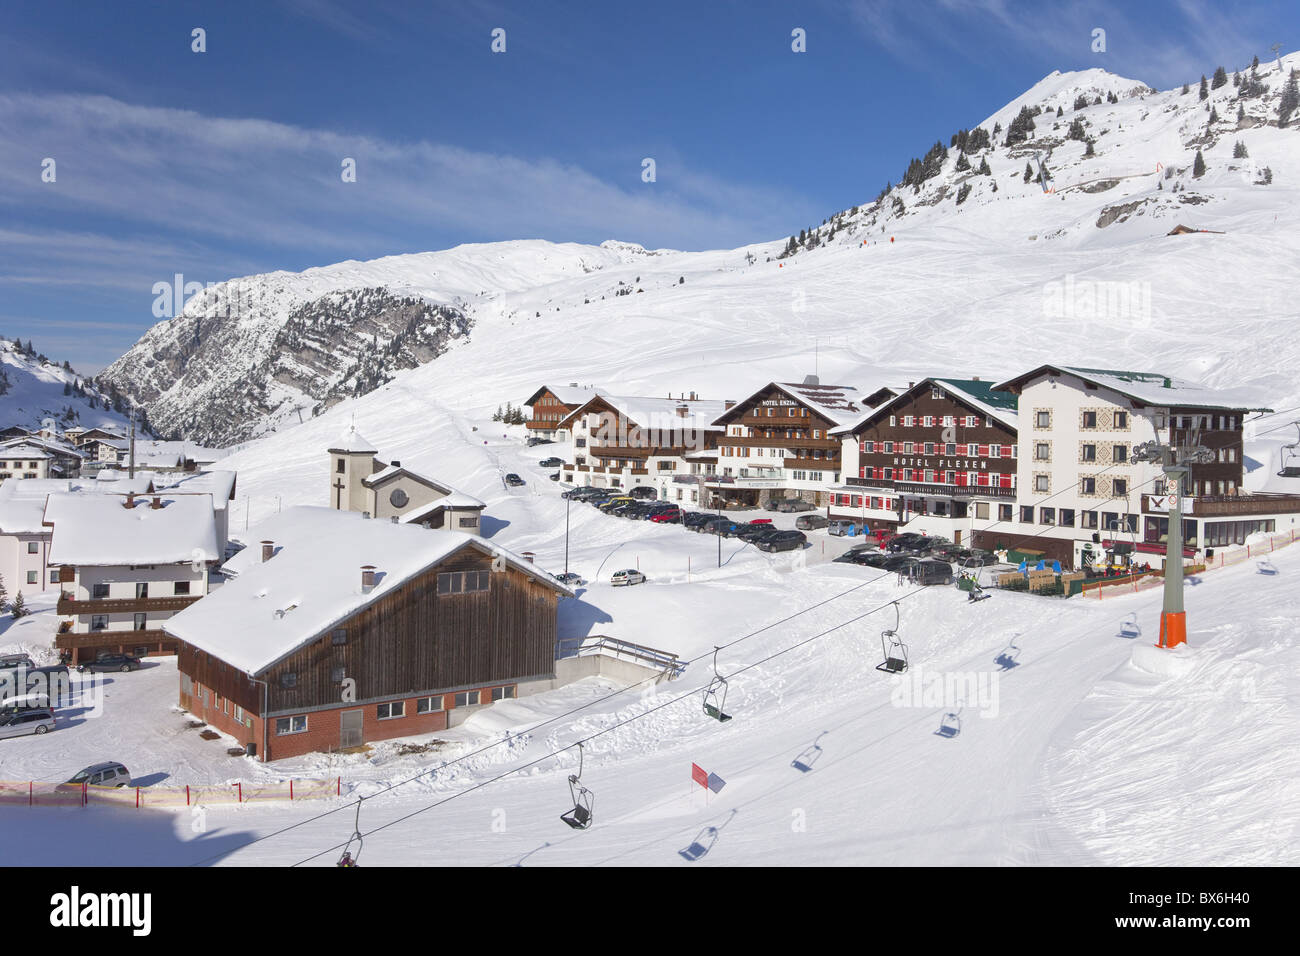 Alpine Resort von Zürs, St. Anton am Arlberg im Winter Schnee, Österreichische Alpen, Österreich, Europa Stockfoto